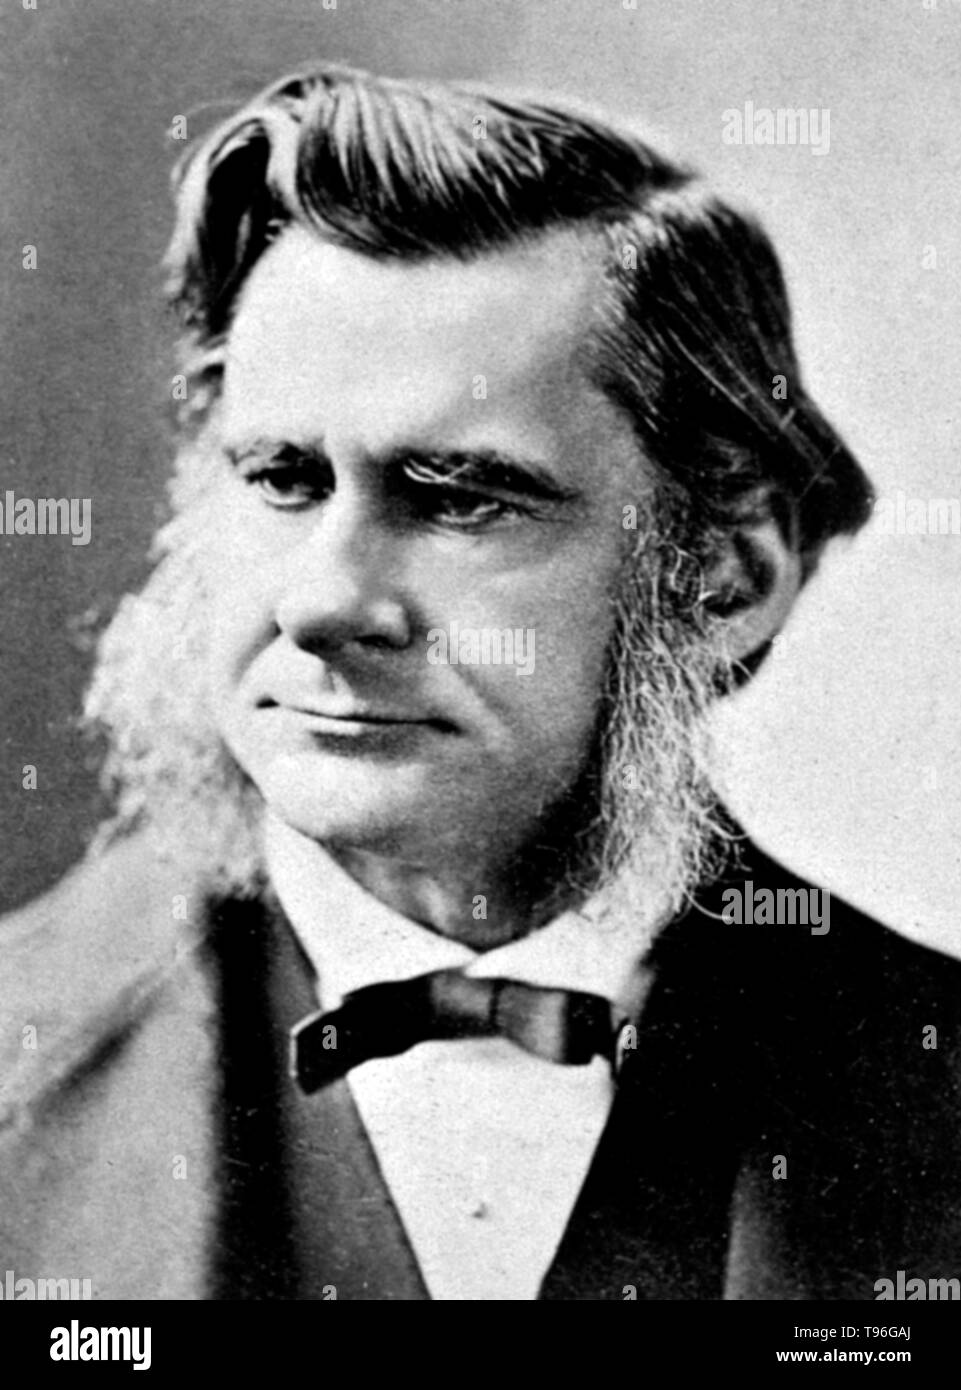 Thomas Henry Huxley (4. Mai 1825 - 29. Juni 1895) war ein englischer Biologe, als 'Darwin Bulldogge' für seine Befürwortung von Charles Darwins Theorie der Evolution bekannt. Huxleys berühmte 1860 Aussprache mit Samuel Wilberforce war ein wichtiger Moment in der breitere Akzeptanz der Evolution, und in seiner eigenen Karriere. Huxley war langsam zu einigen von Darwins Ideen, wie Gradualismus akzeptieren, und war unbestimmt über die natürliche Selektion, aber trotz dieser war er in seinen öffentlichen Unterstützung von Darwin von ganzem Herzen. Stockfoto